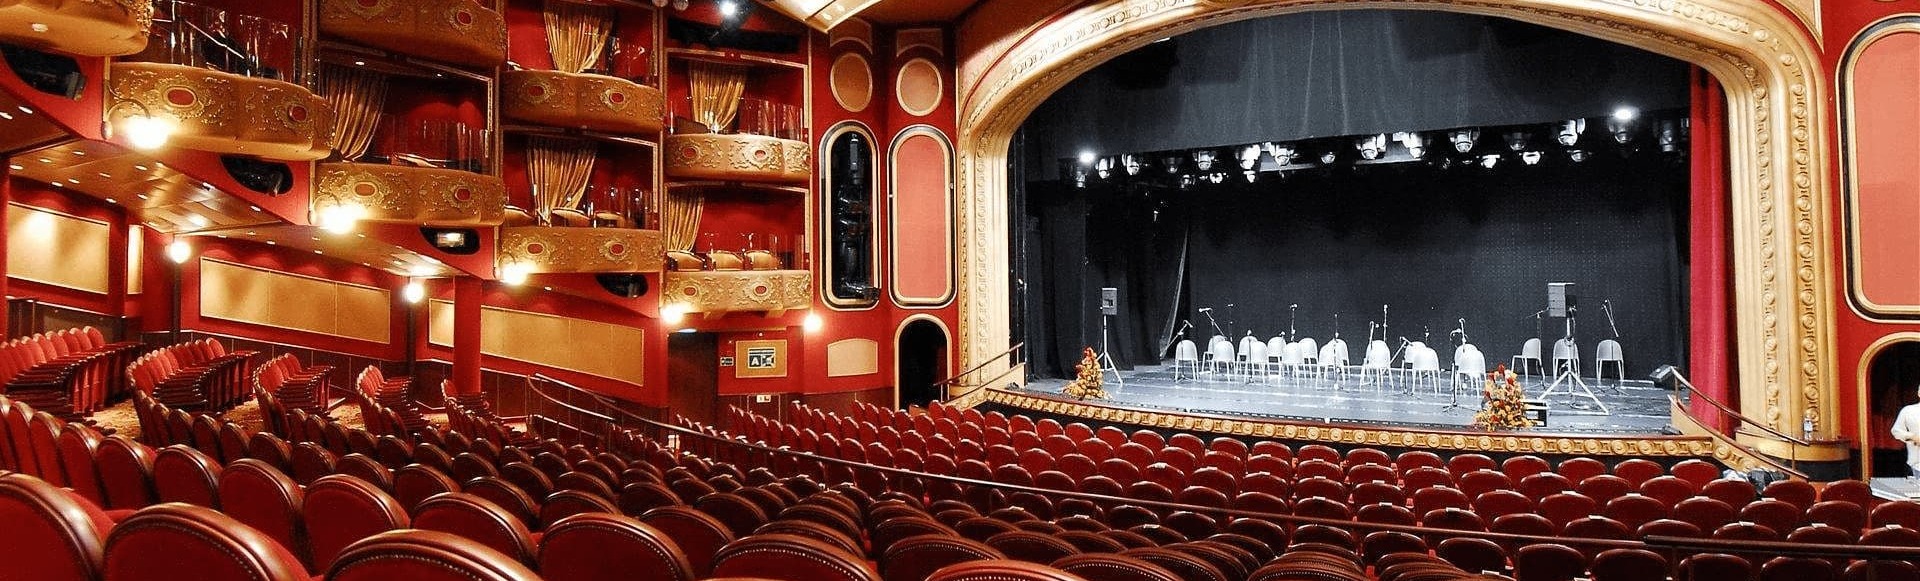 театр современник зал